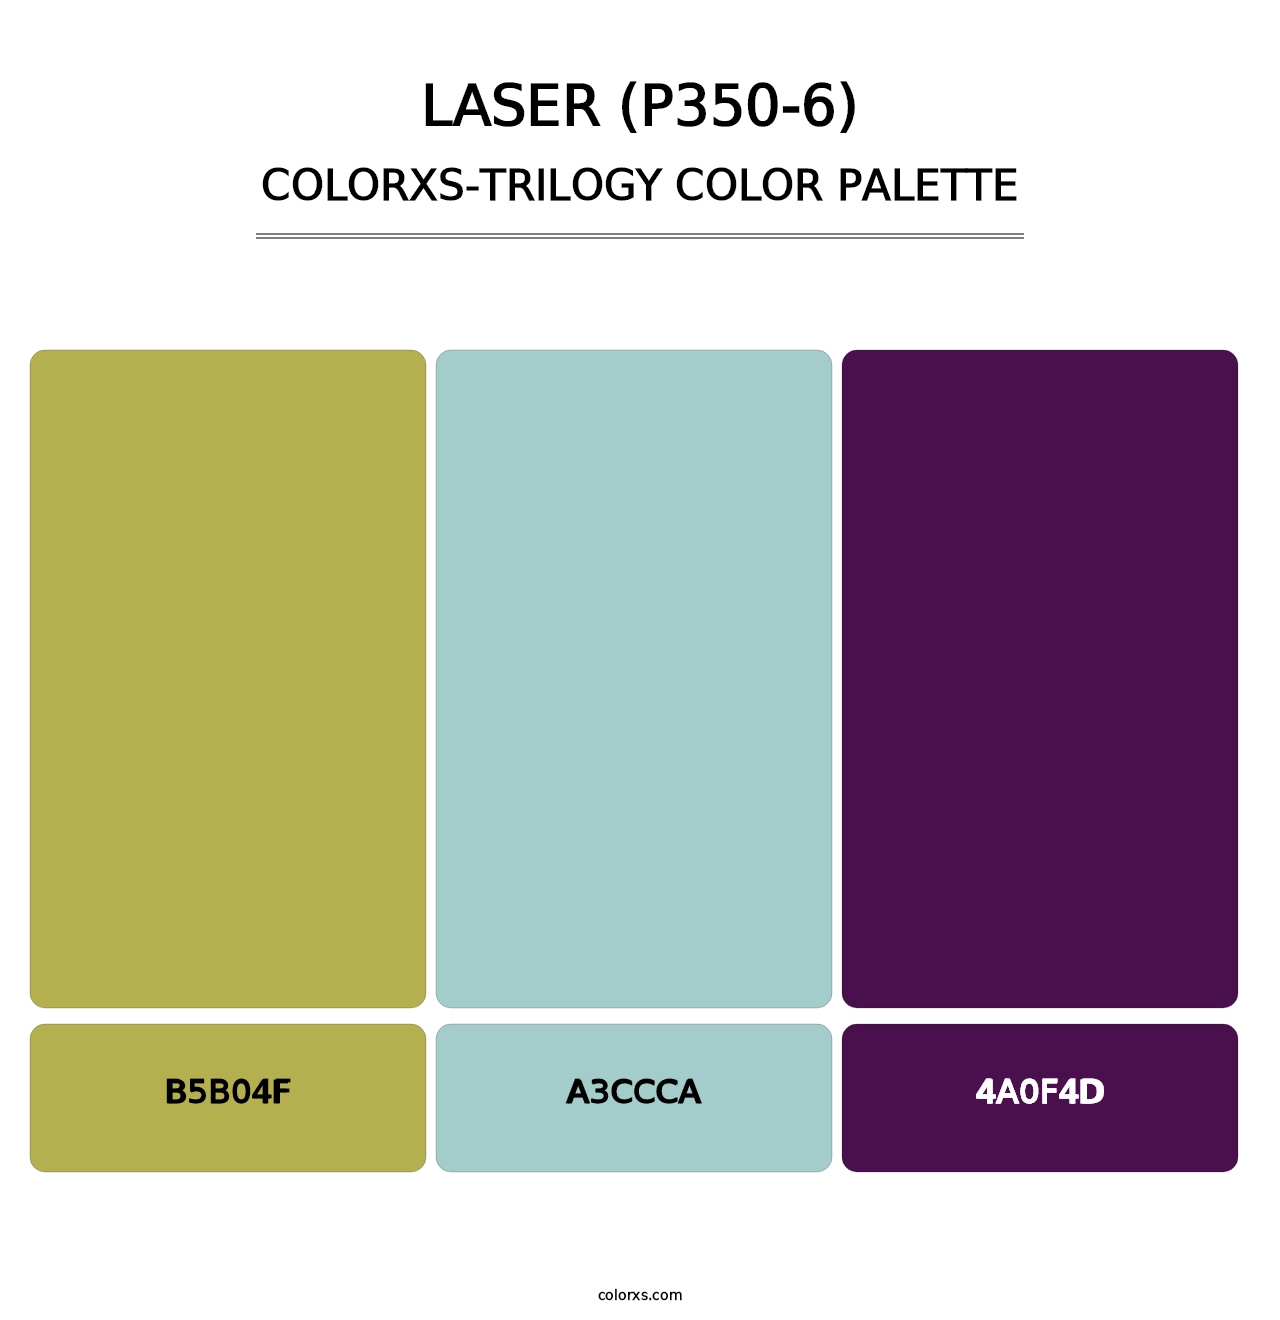 Laser (P350-6) - Colorxs Trilogy Palette